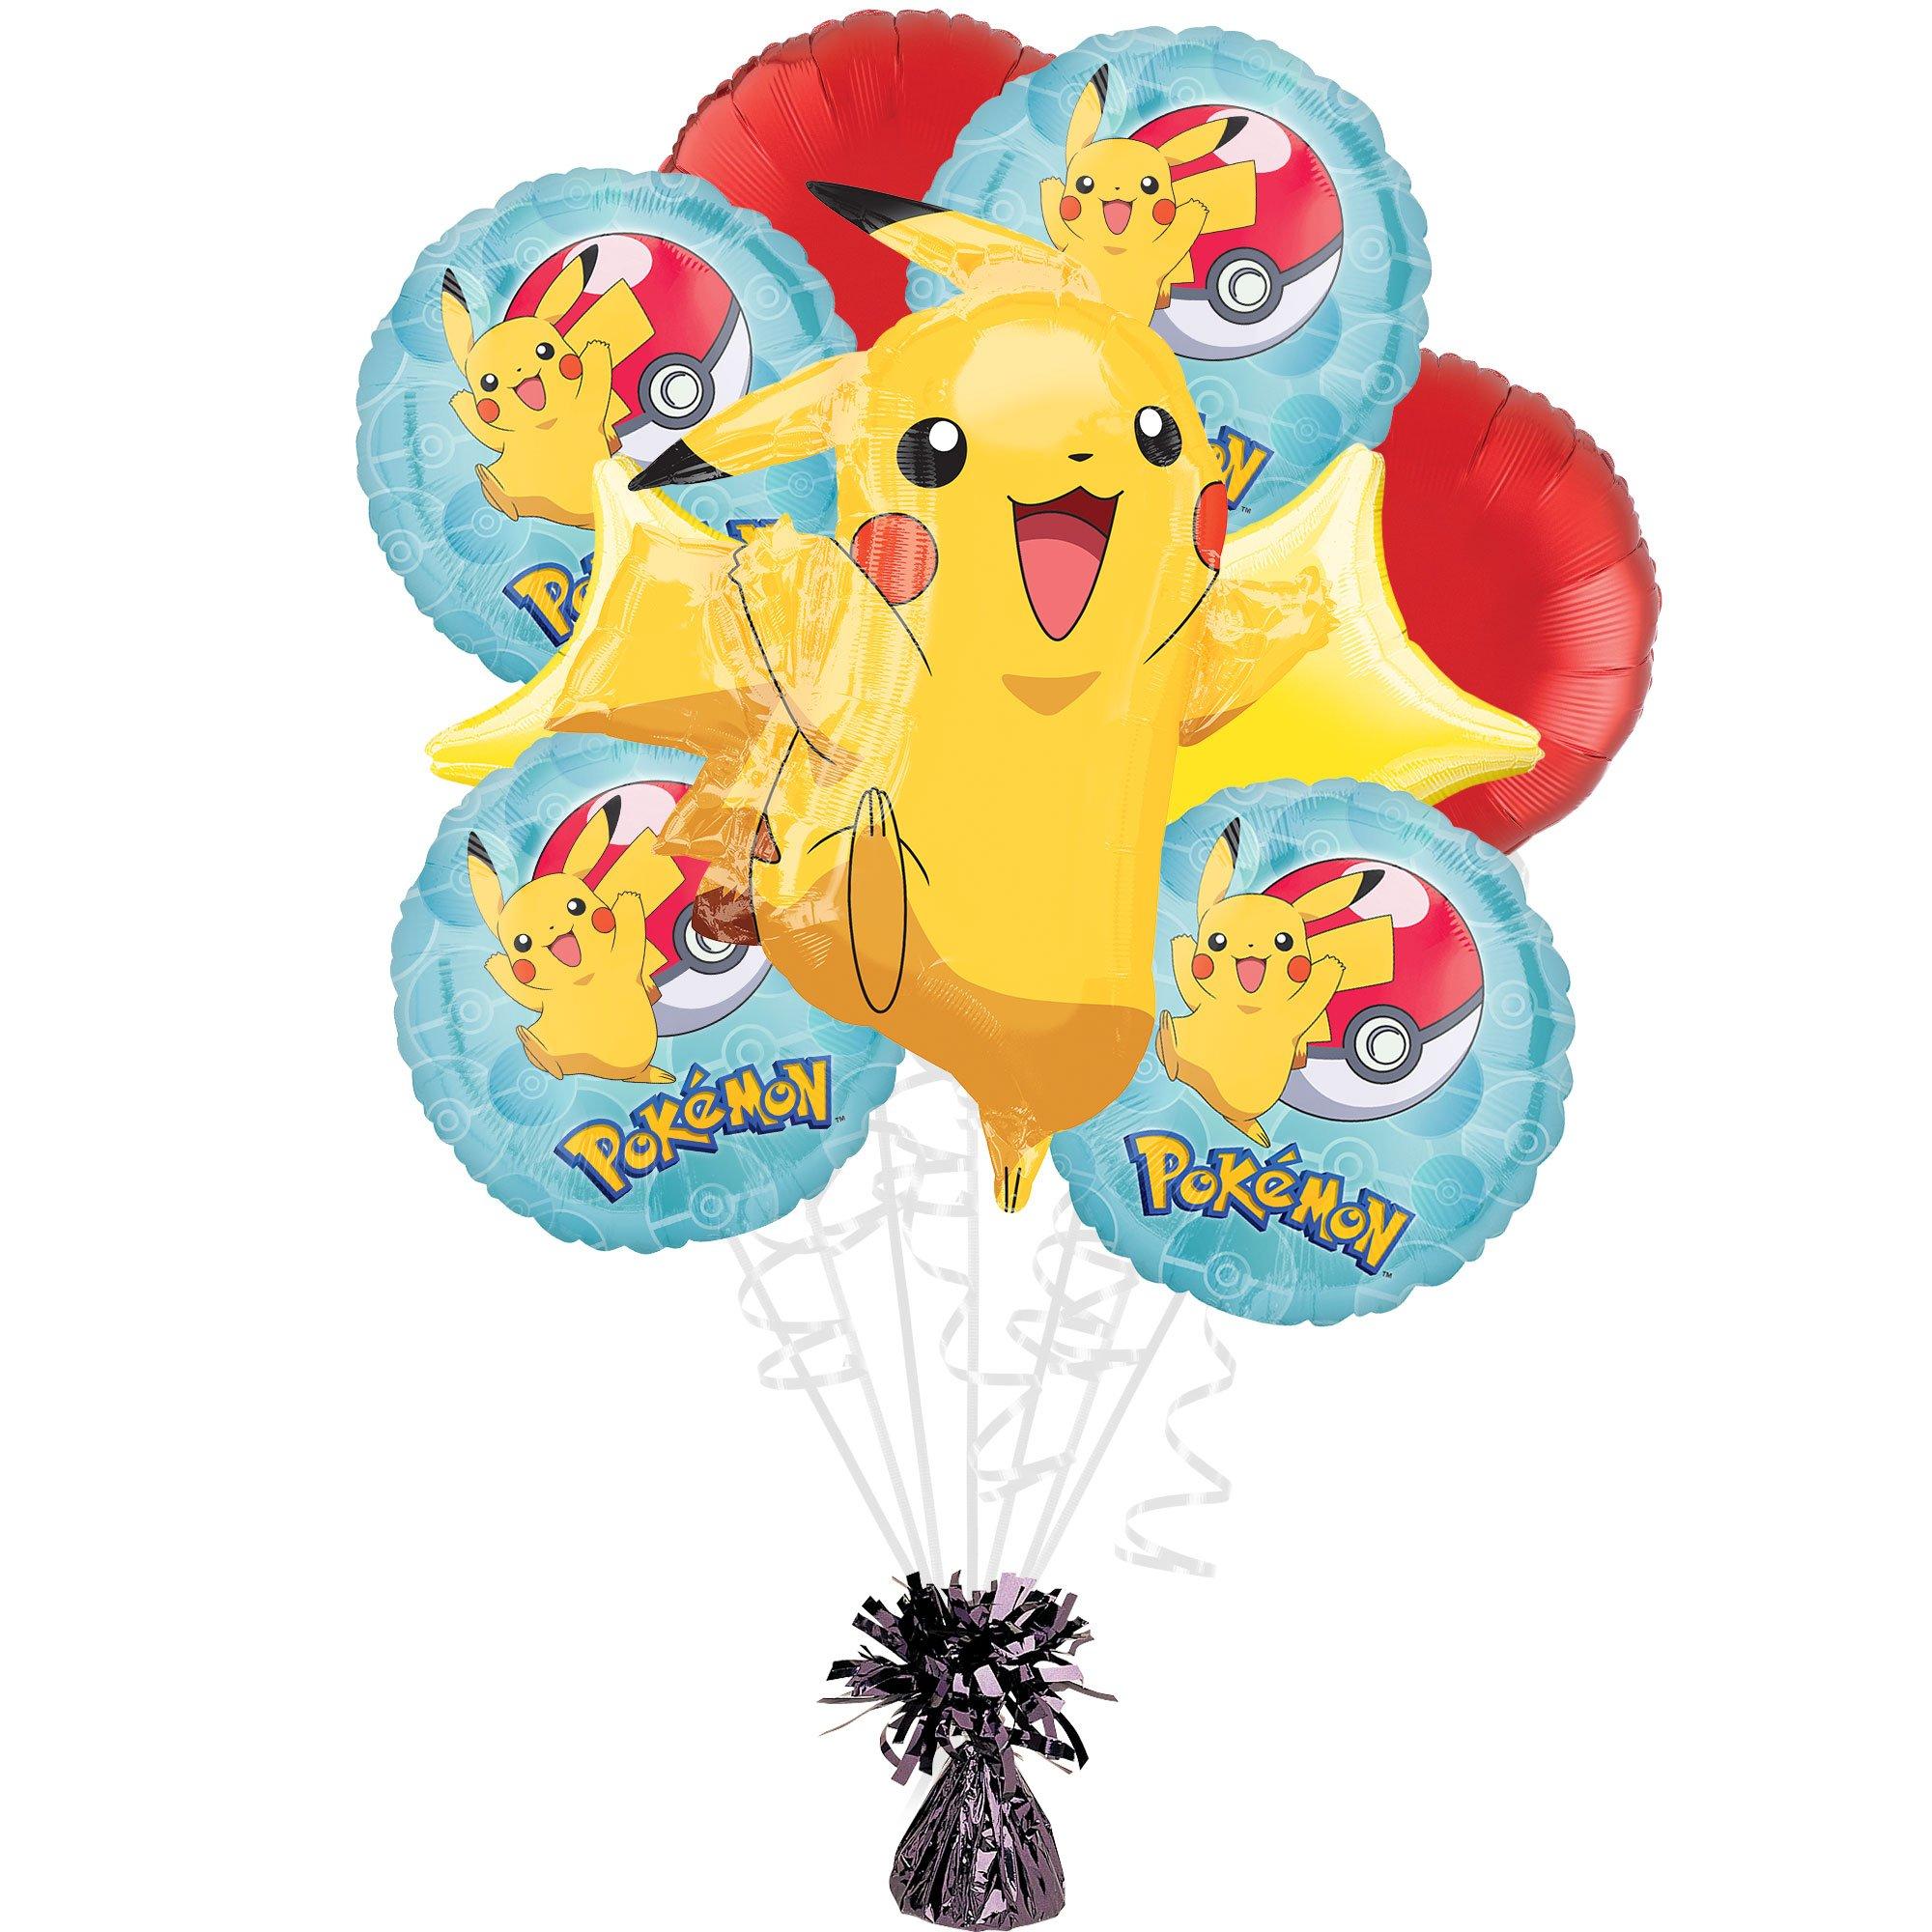 Pikachu Foil Balloon Bouquet, 5pc - Pokémon